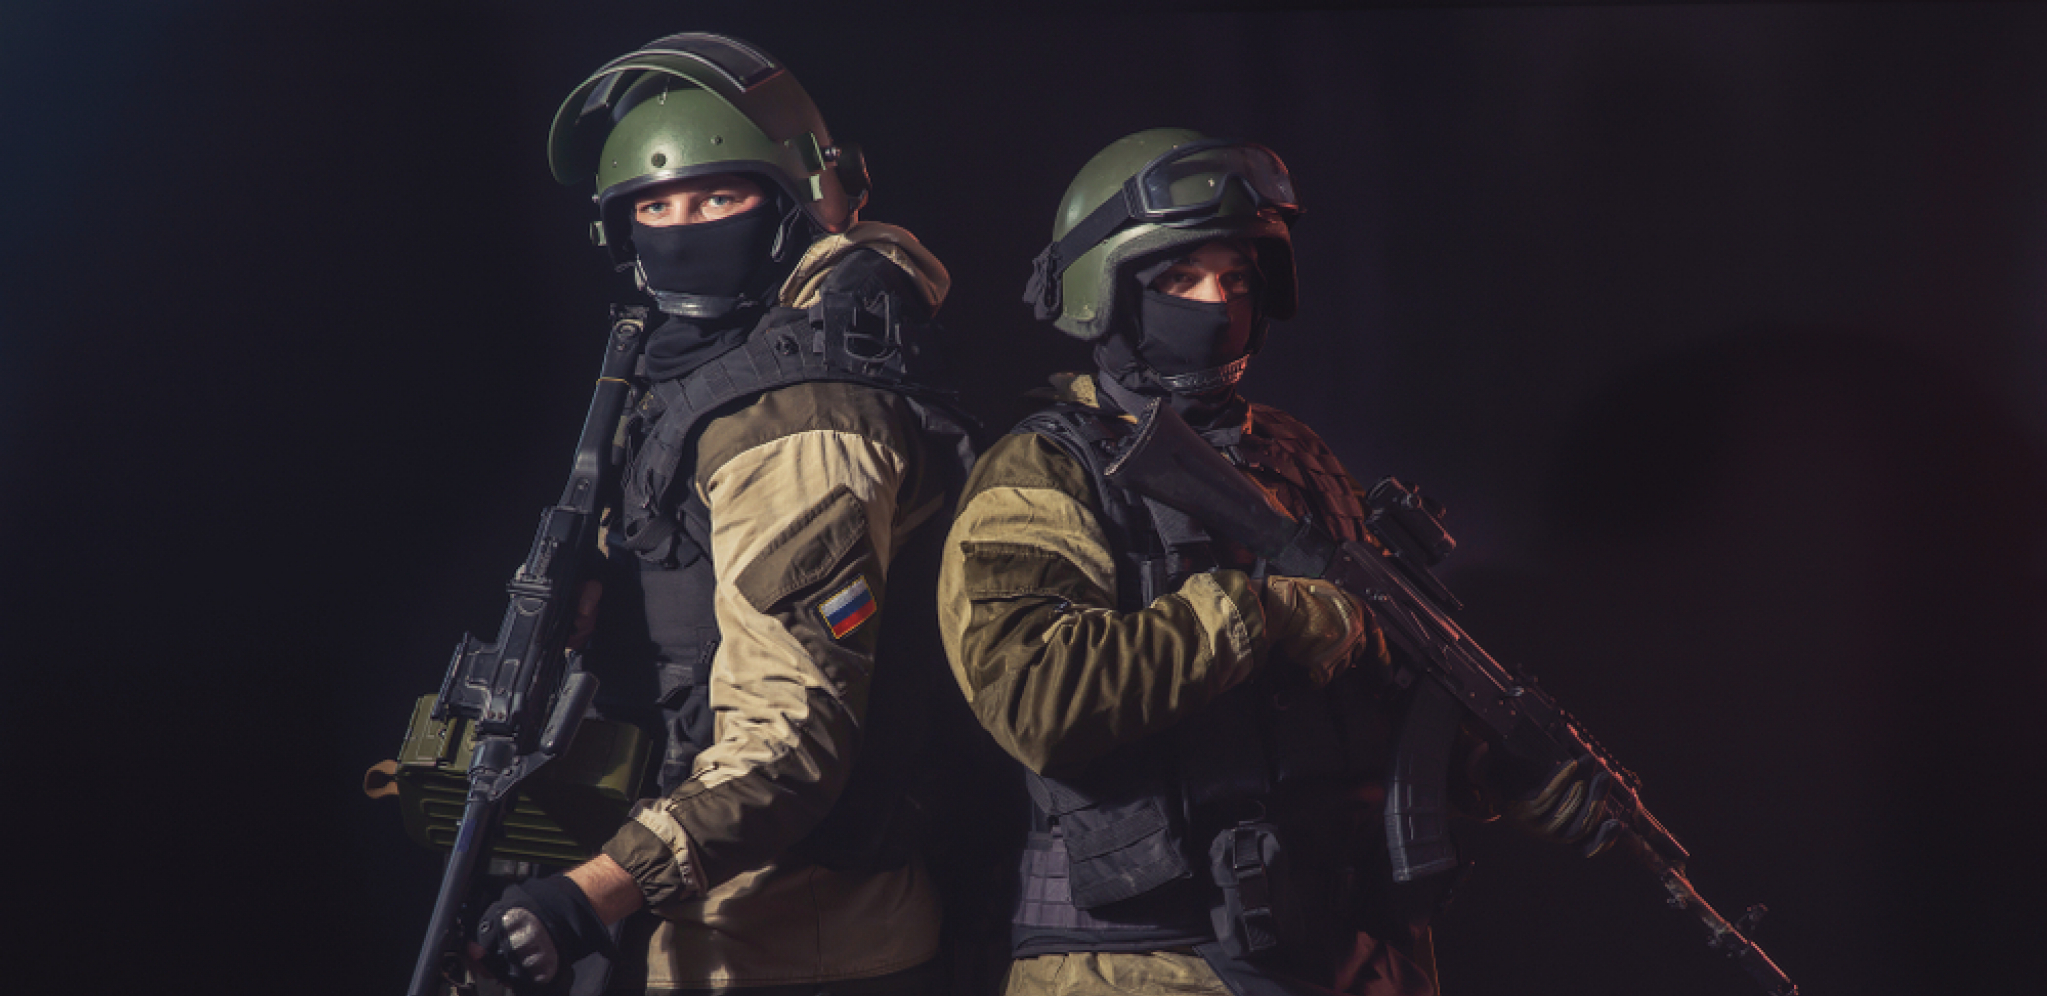 SMS PORUKE NOVO "MOĆNO" ORUŽJE: Ruske snage koriste psihološke i informativne operacije za narušavanje morala ukrajinskih vojnika?